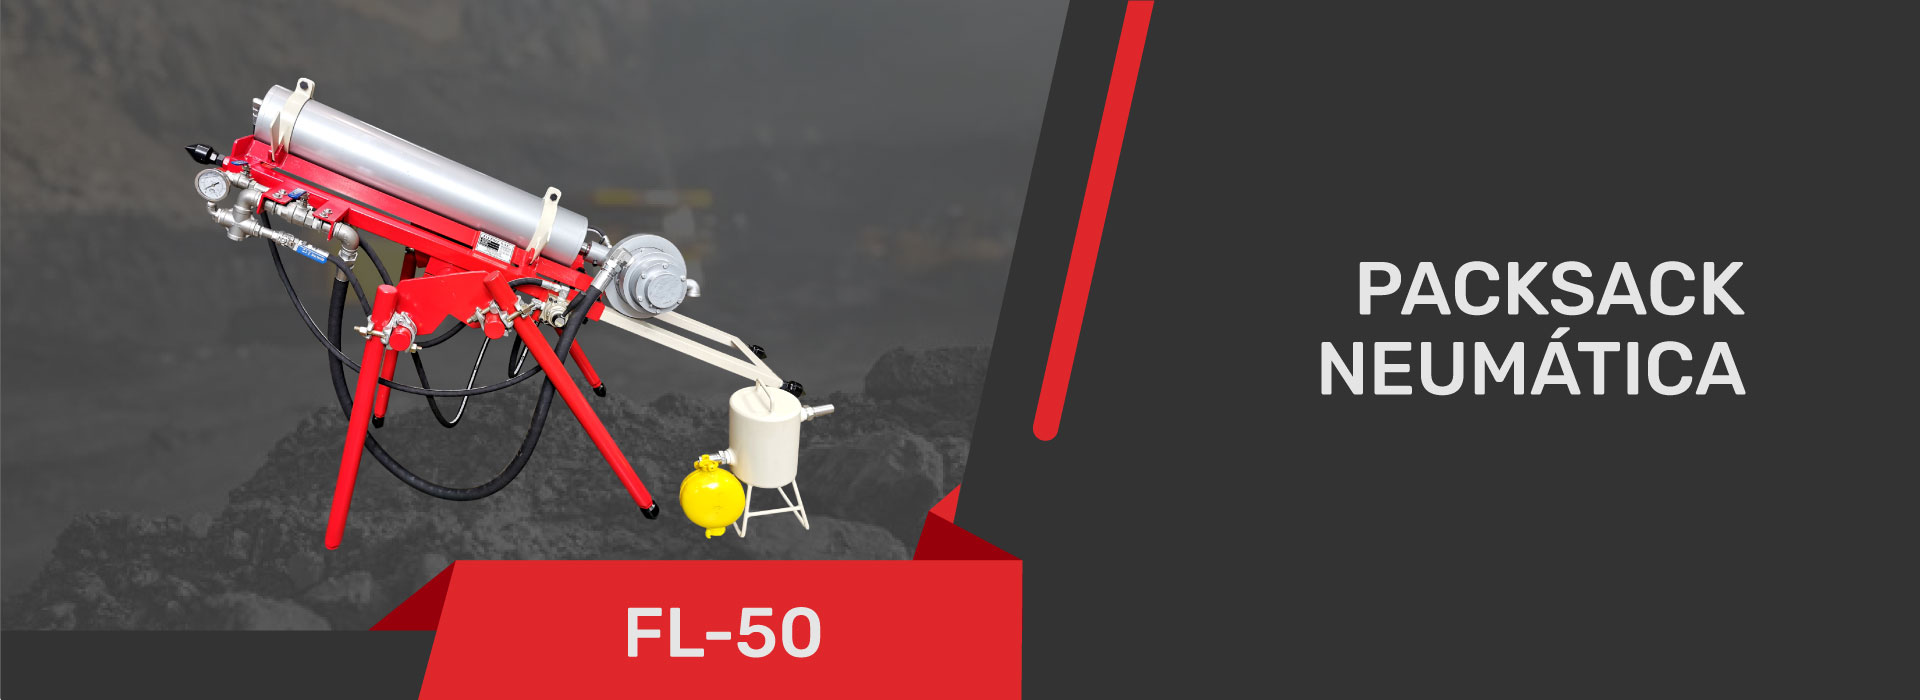 fl-50-1